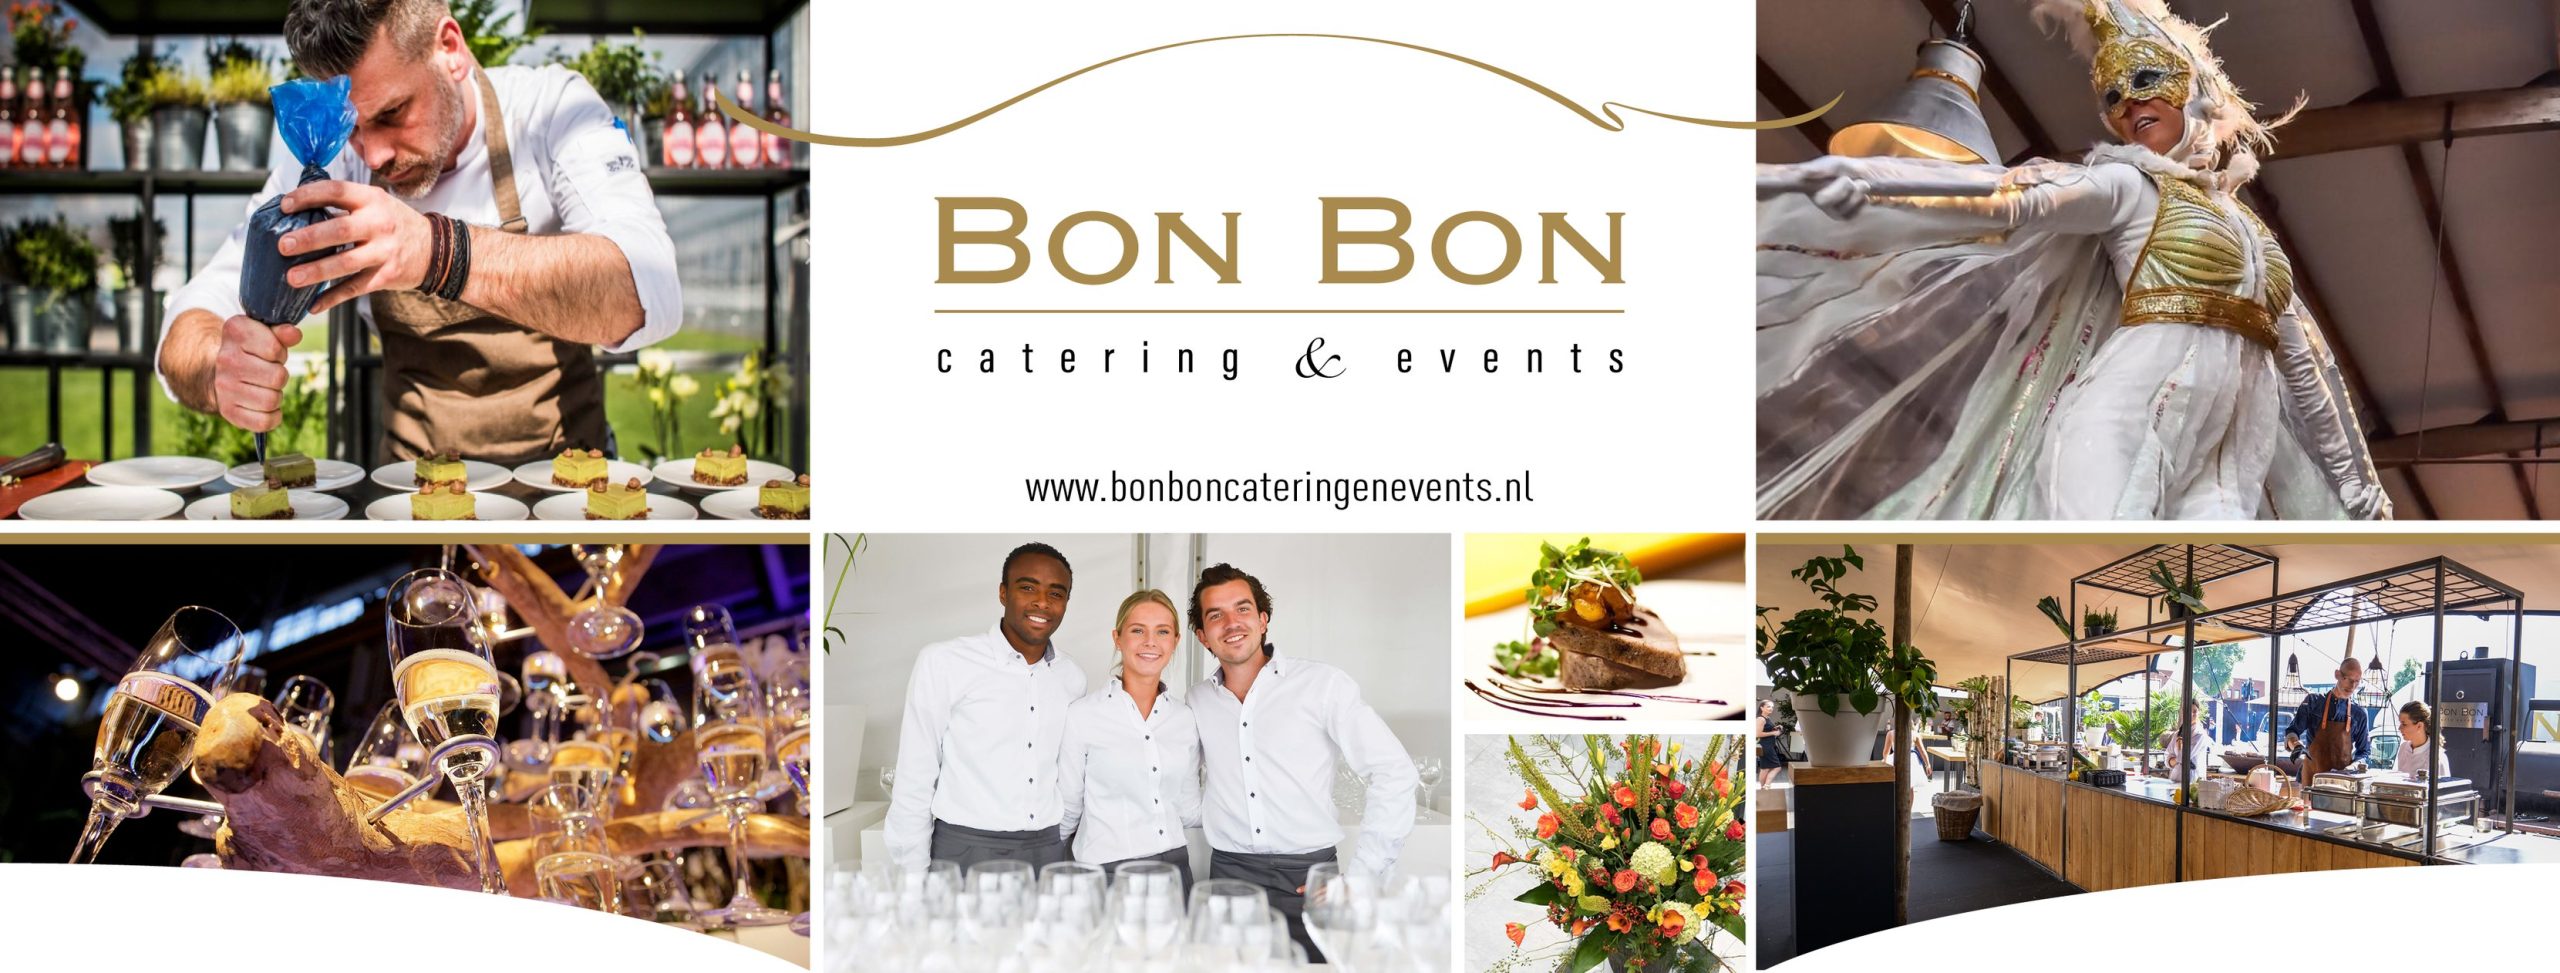 Bon Bon catering & events